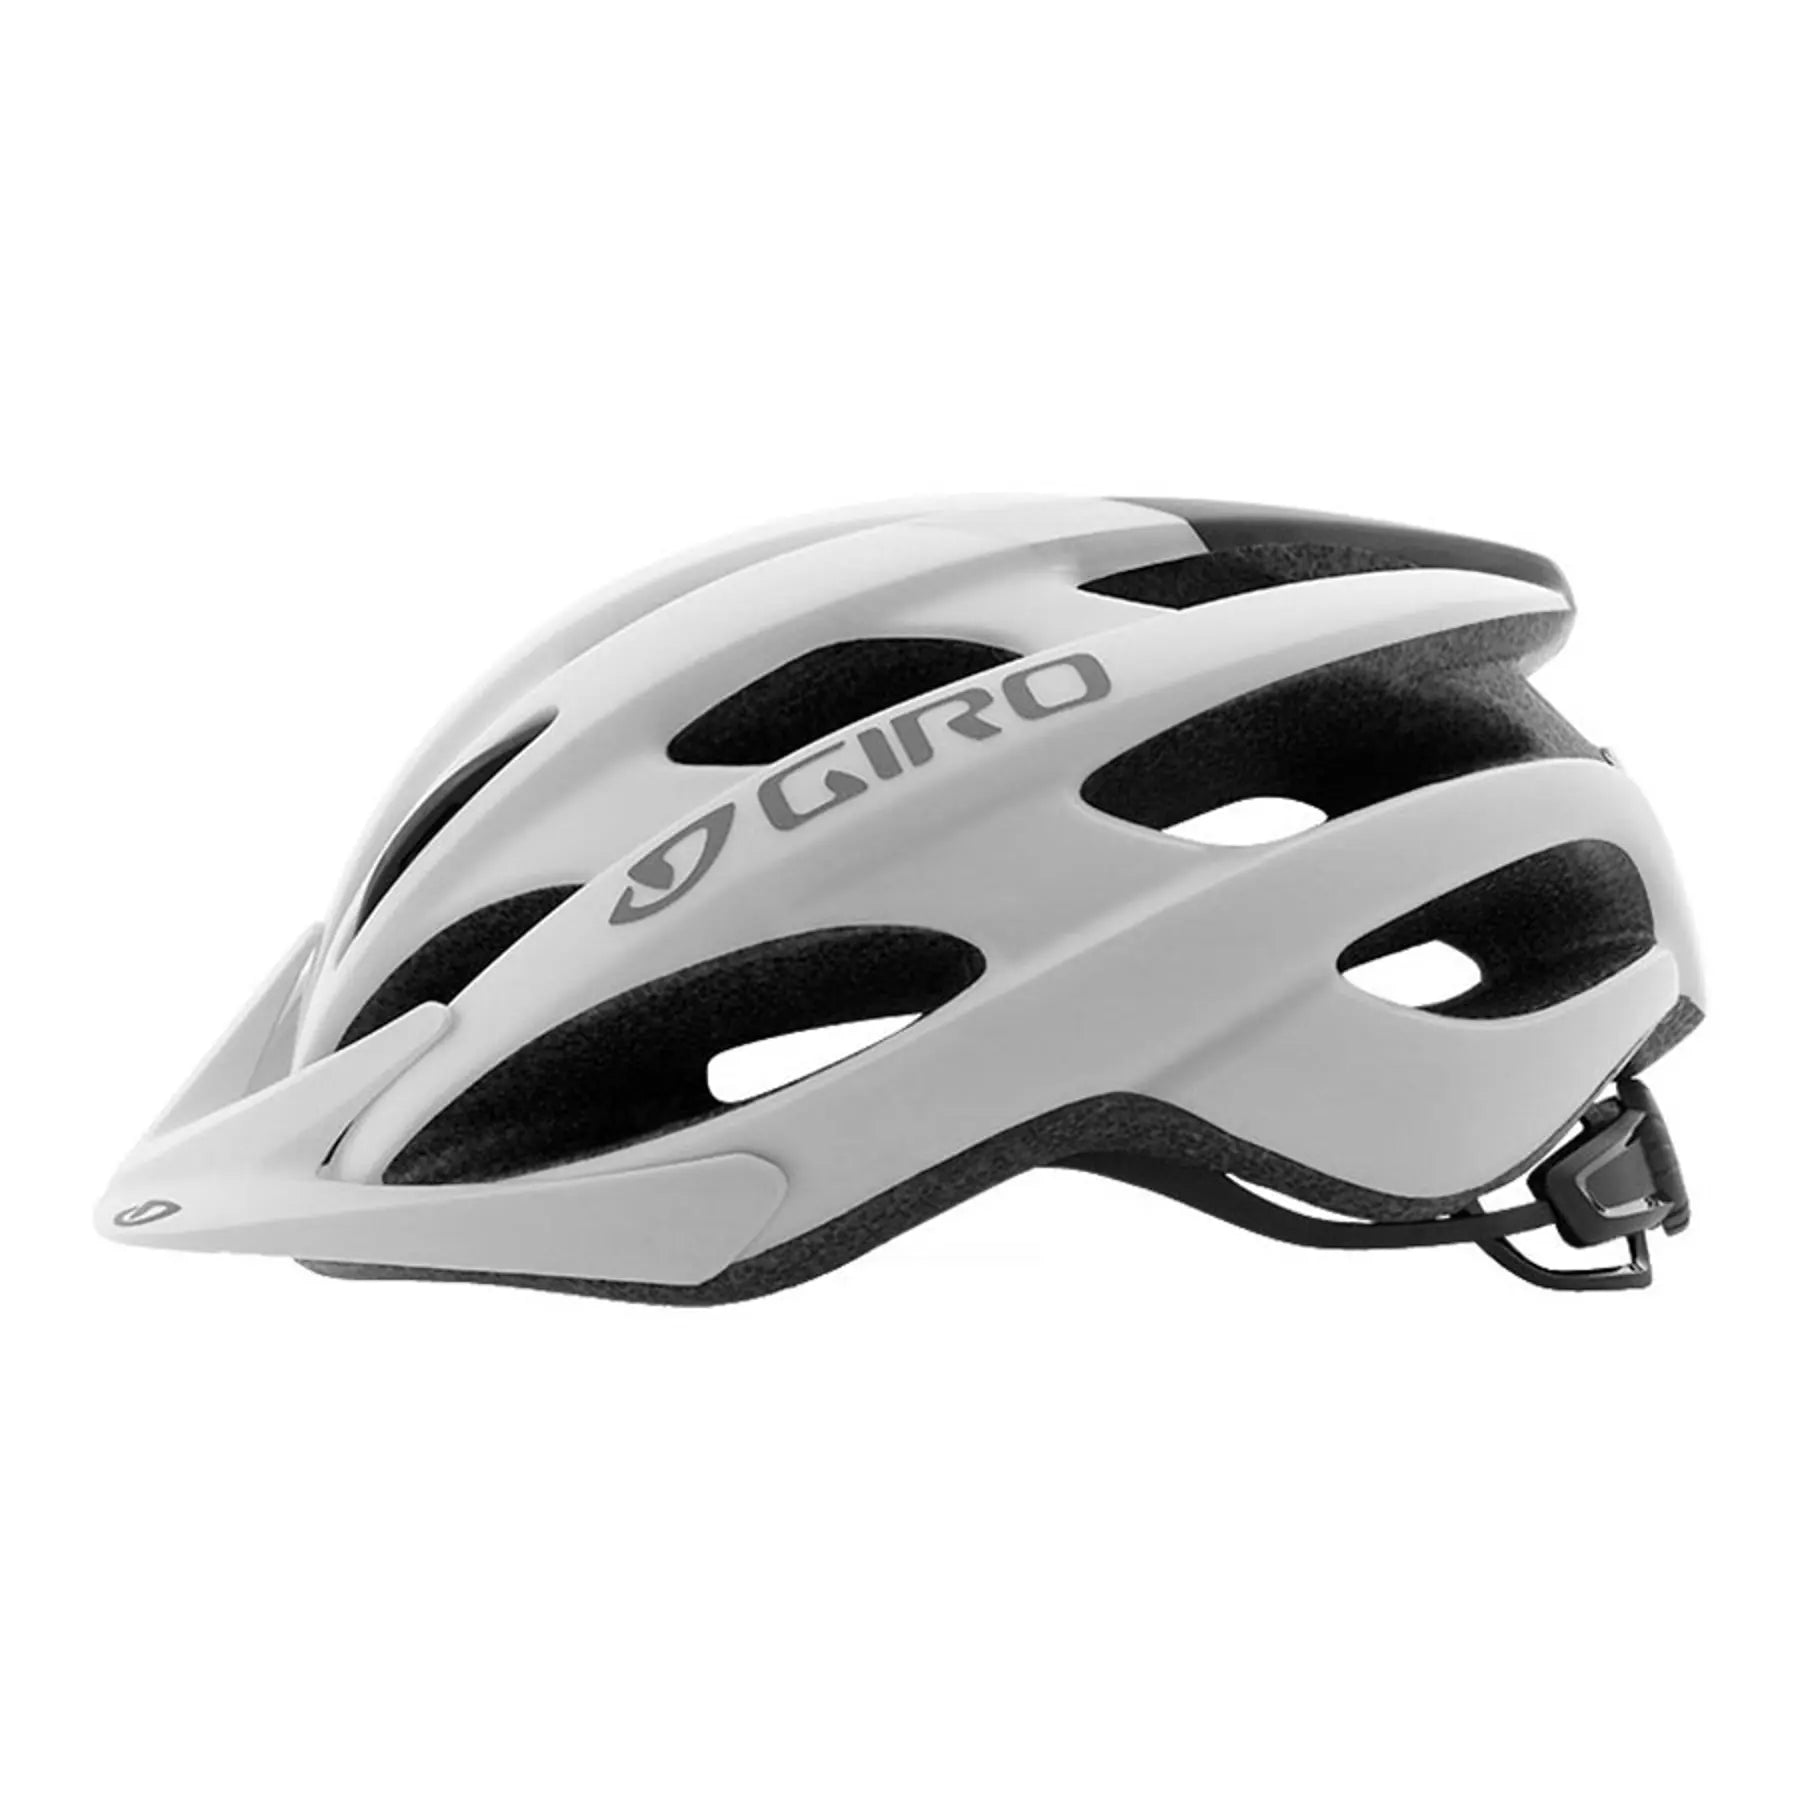 Giro Revel Helmet